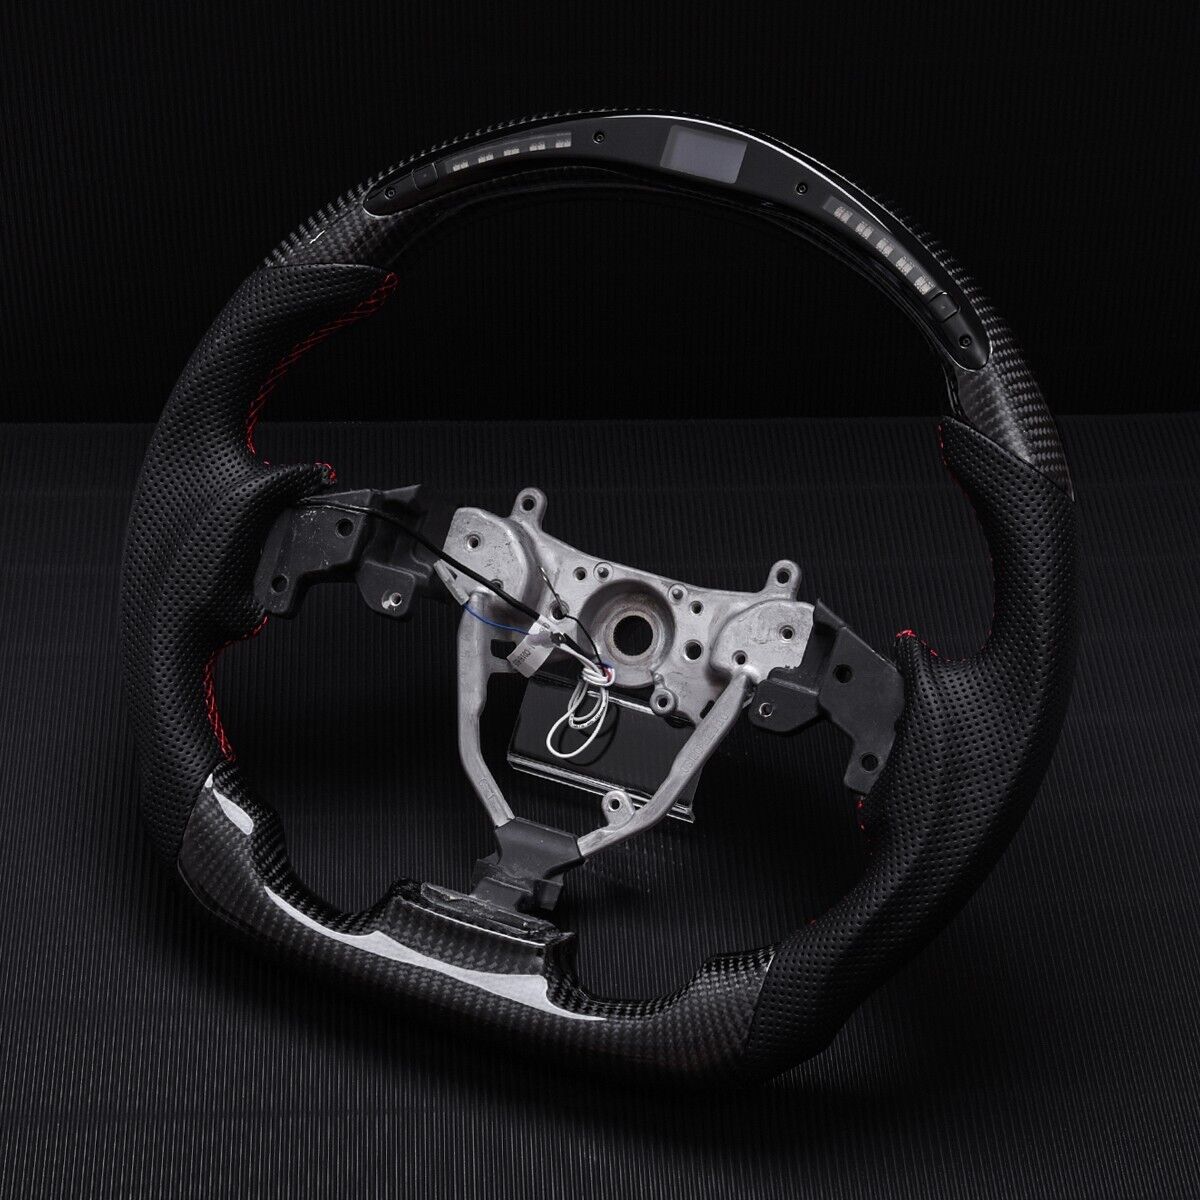 Revolve OEM Carbon Fiber LED Steering Wheel Lexus IS 250/350 2006-2012 - revolvesteering